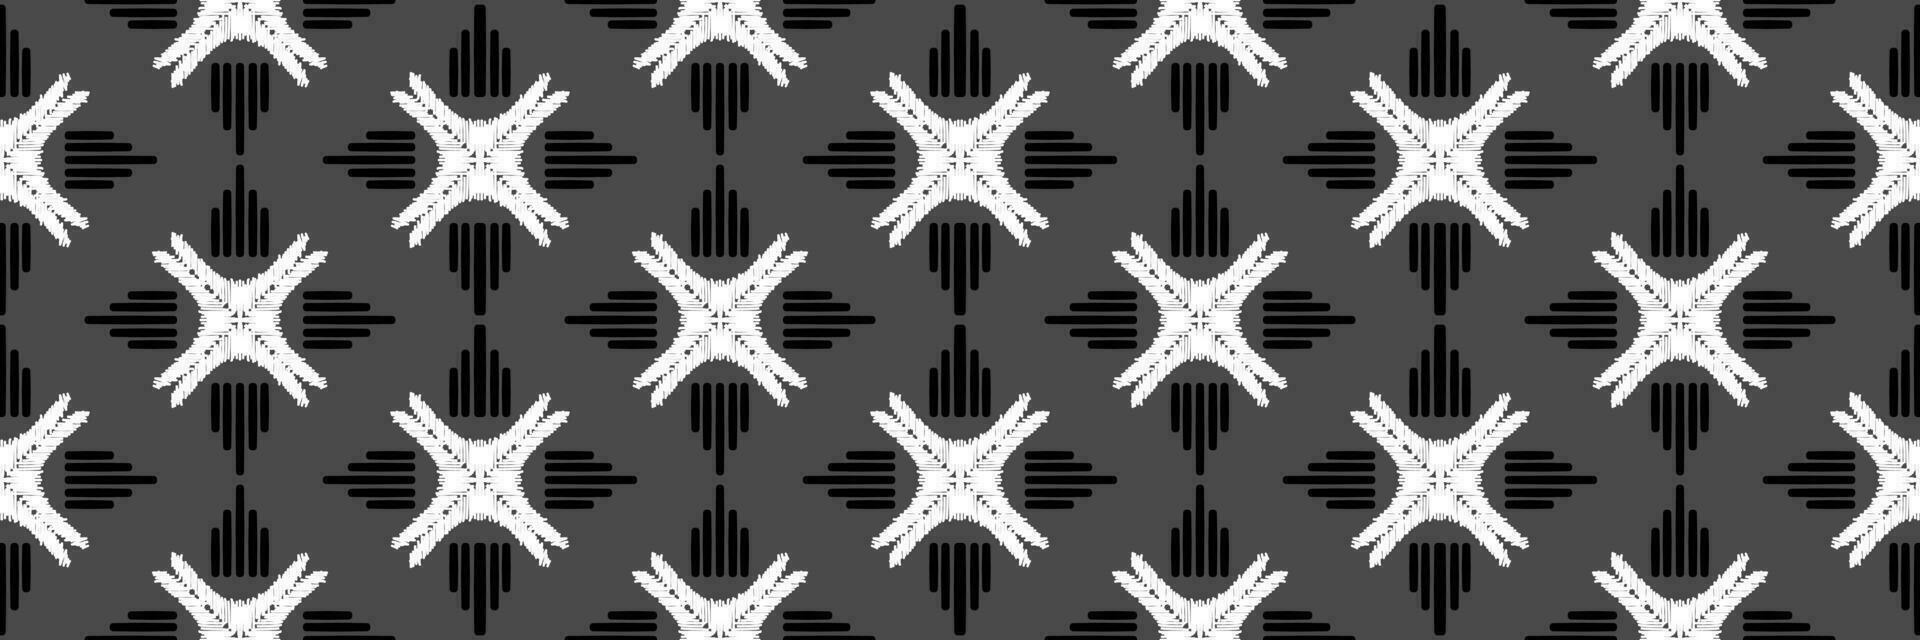 Ikat Seamless Pattern tribal art Embroidery, Ikat stripe Digital textile Asian Design for Prints Fabric saree Mughal Swaths texture Kurti Kurtis Kurtas, Motif Batik vector